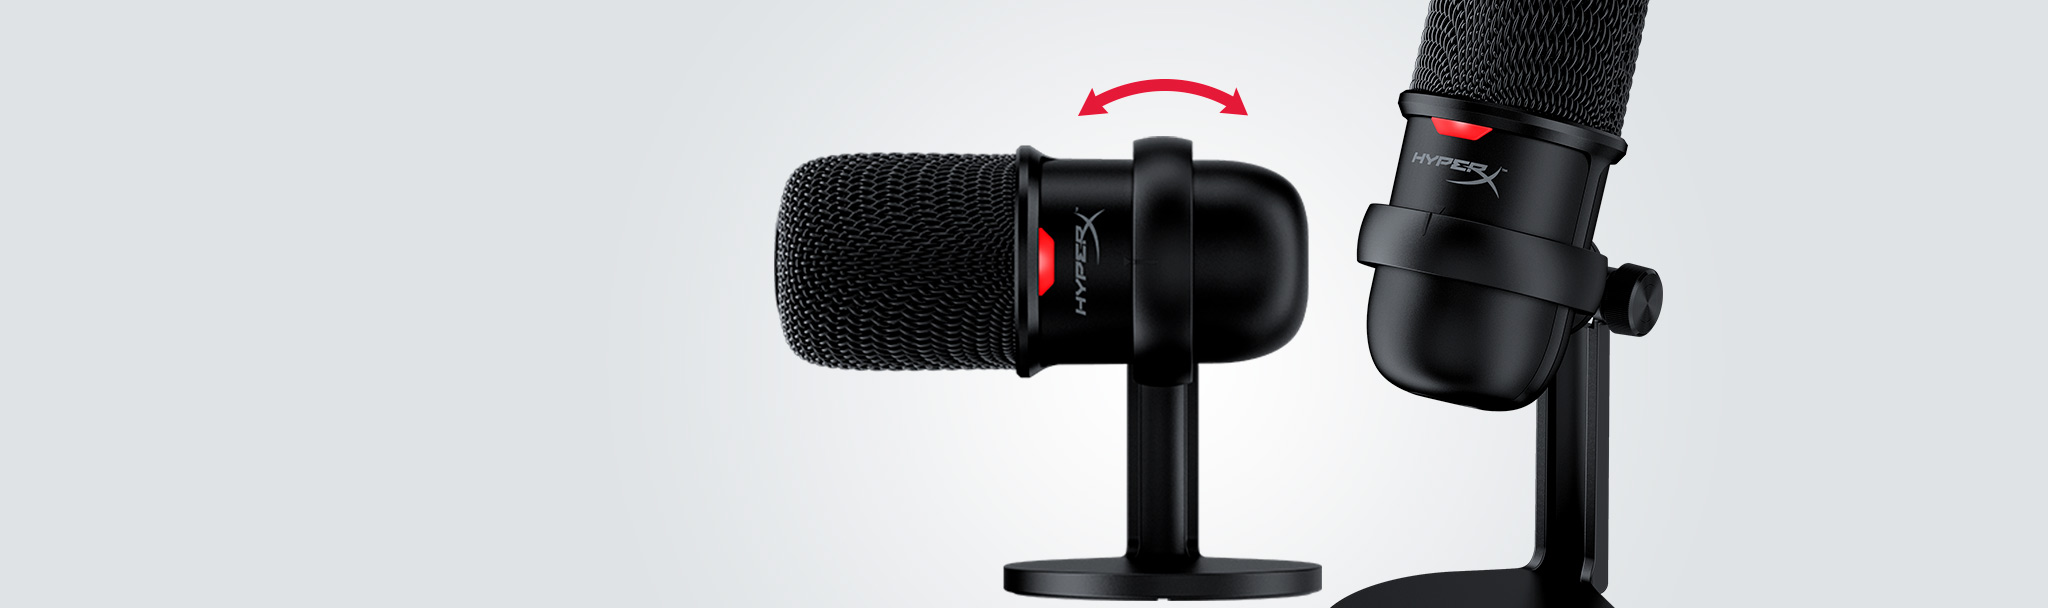 Microphone Kingston HyperX Solocast - Standalone Microphone HMIS1X-XX-BK/G tích hợp chân đế có thể dễ dàng điều chỉnh